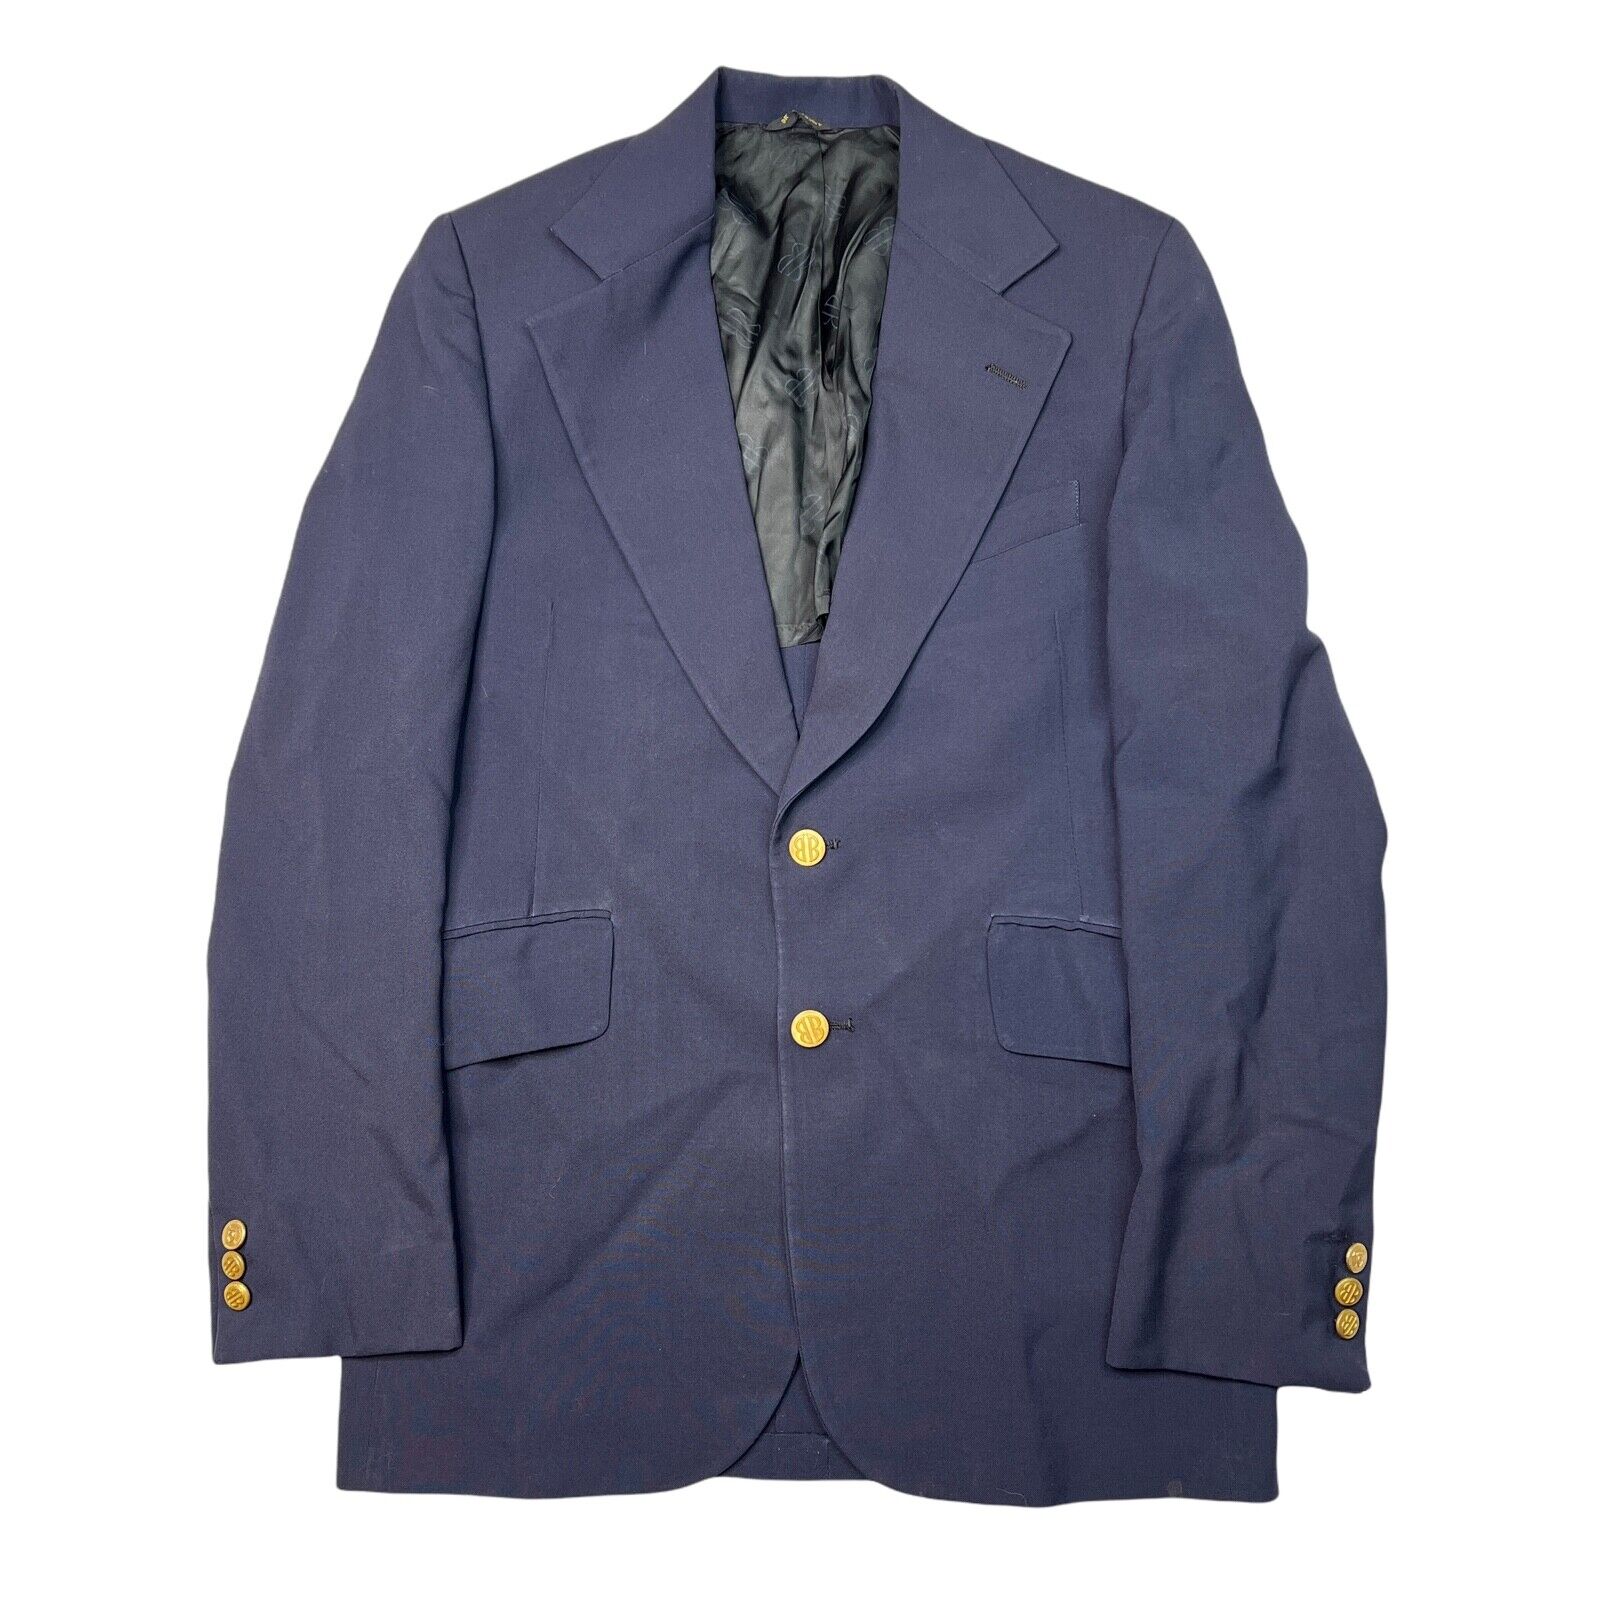 Levi's VTG 70s Action Suit Blazer Suit Jacket Sta-Prest Plaid Blue Gray  Mens 44R | eBay